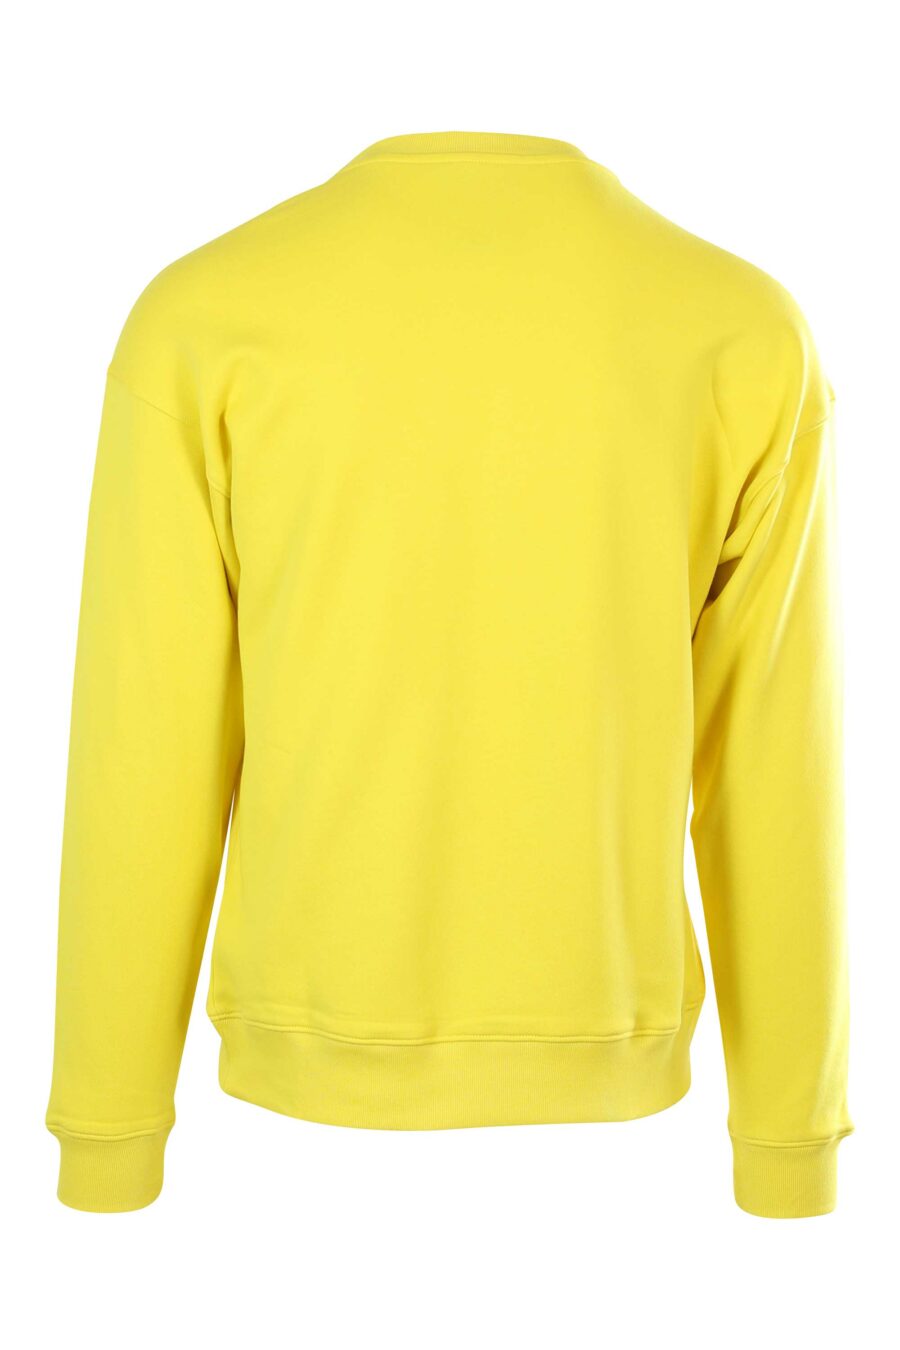 Gelbes Sweatshirt mit schwarzem Logo-Streifen - 667112846782 2